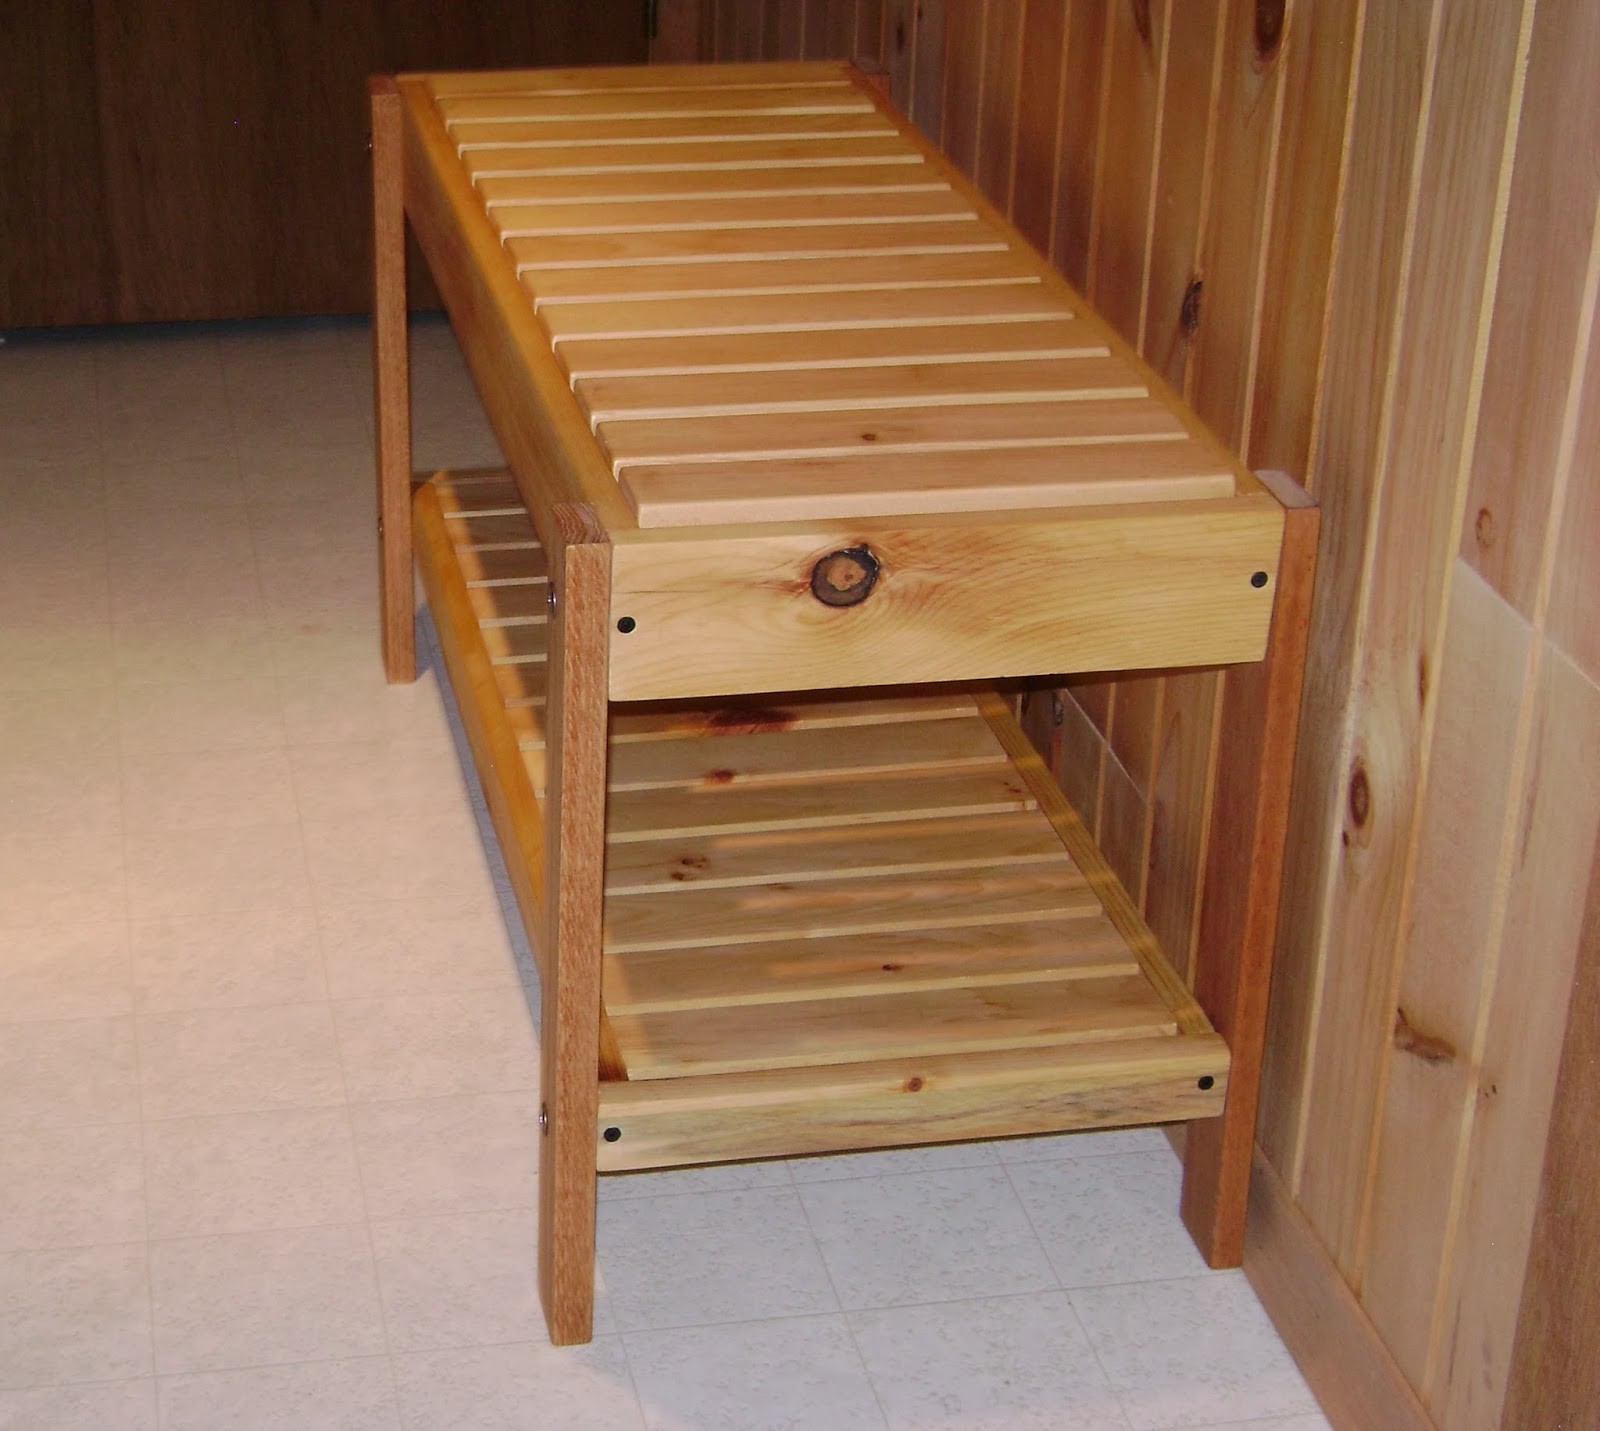 Bedroom bench woodworking plans